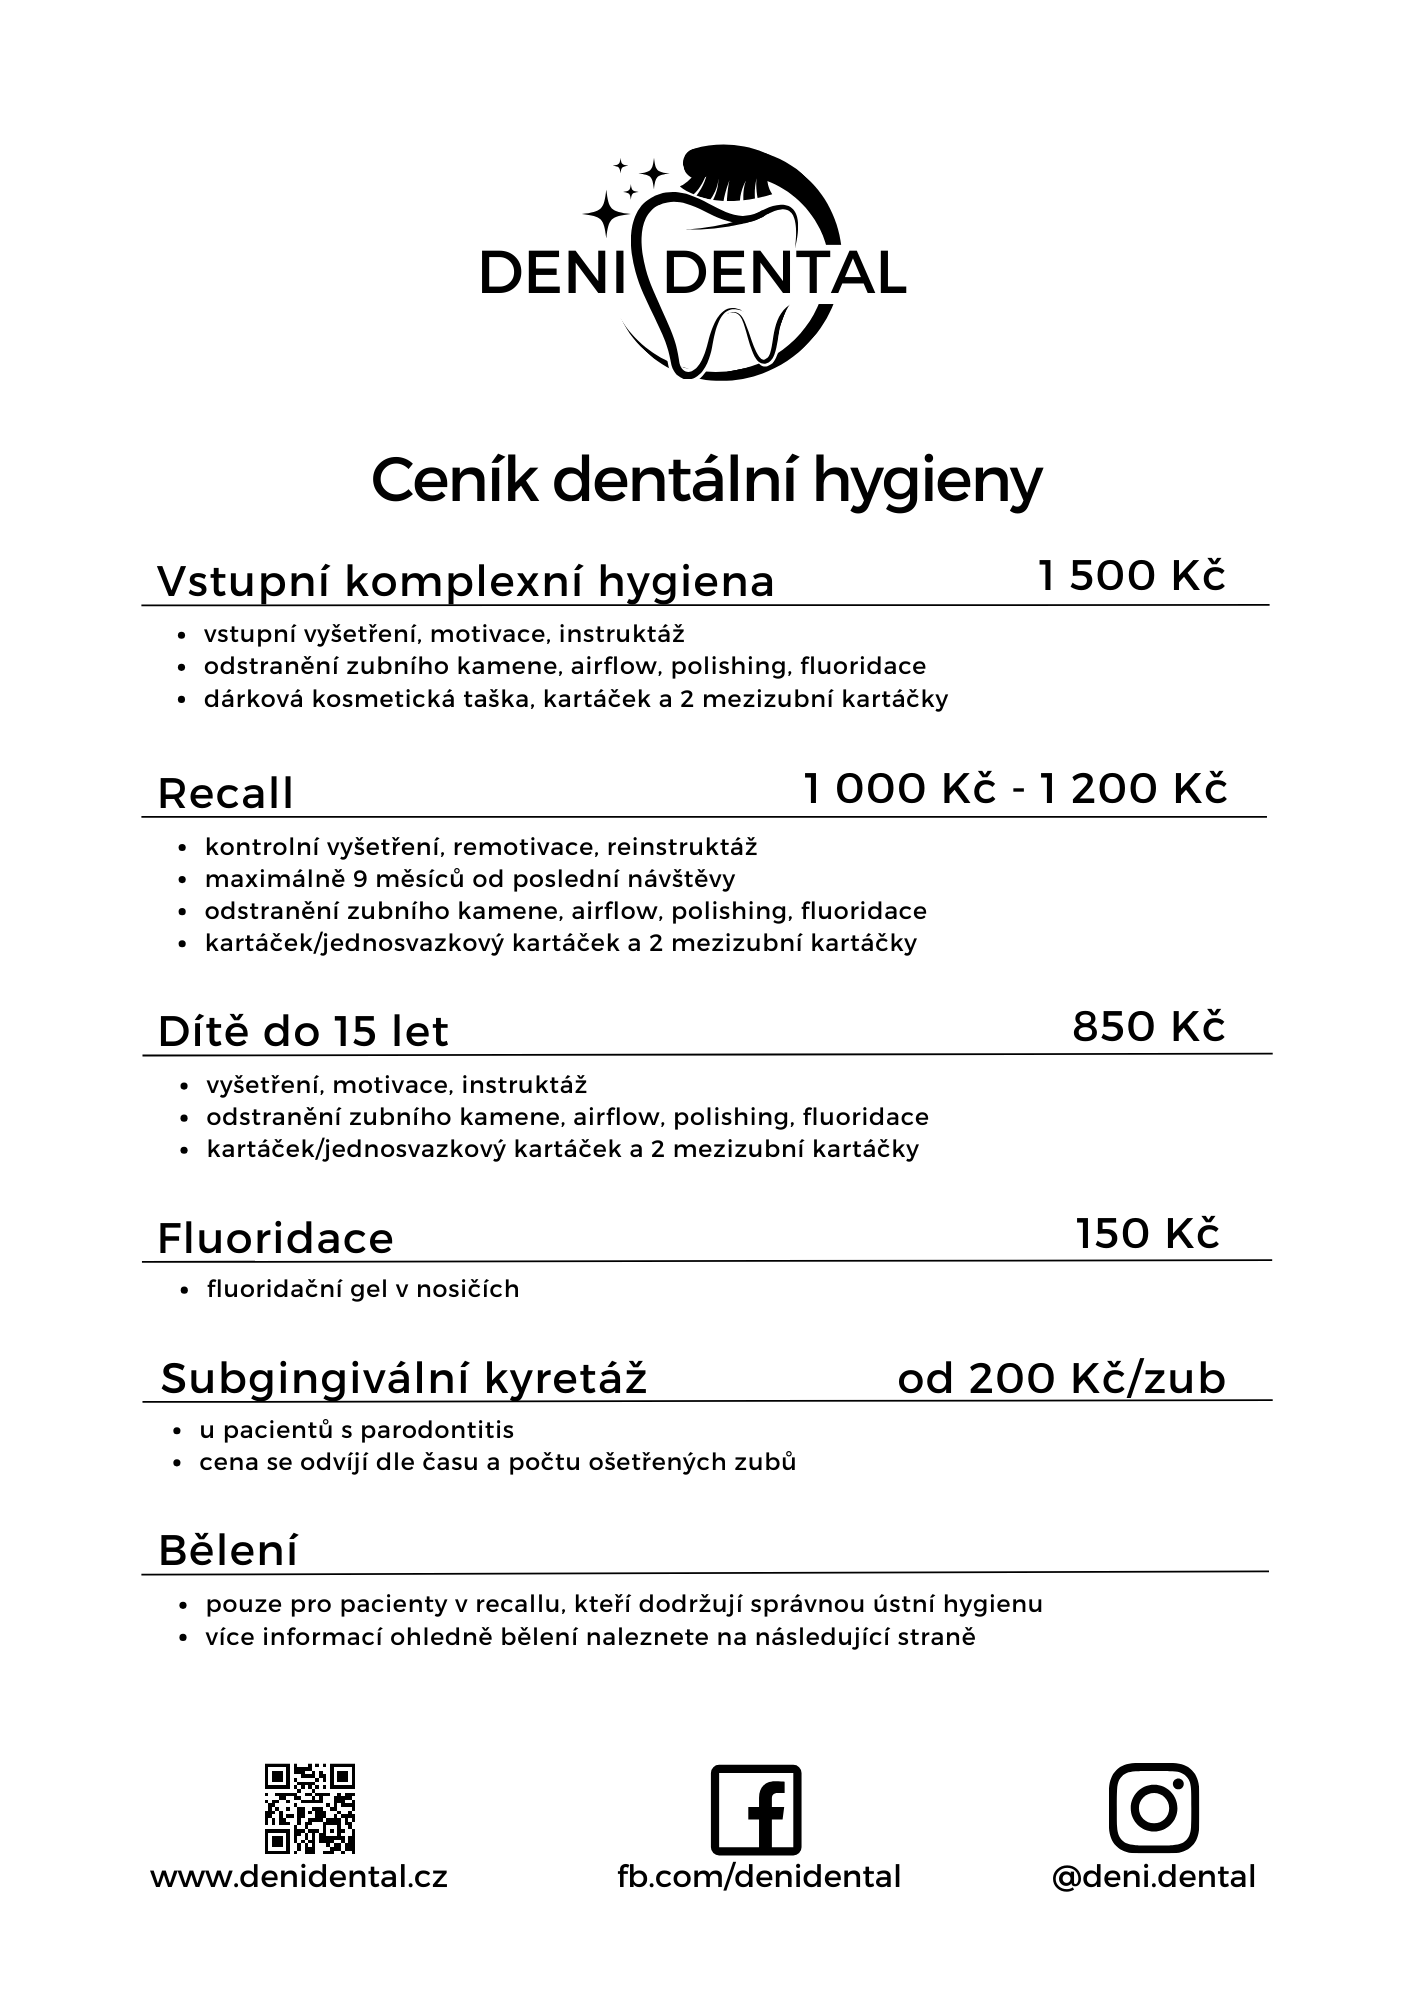 Ceník služeb dentální hygieny DeniDental